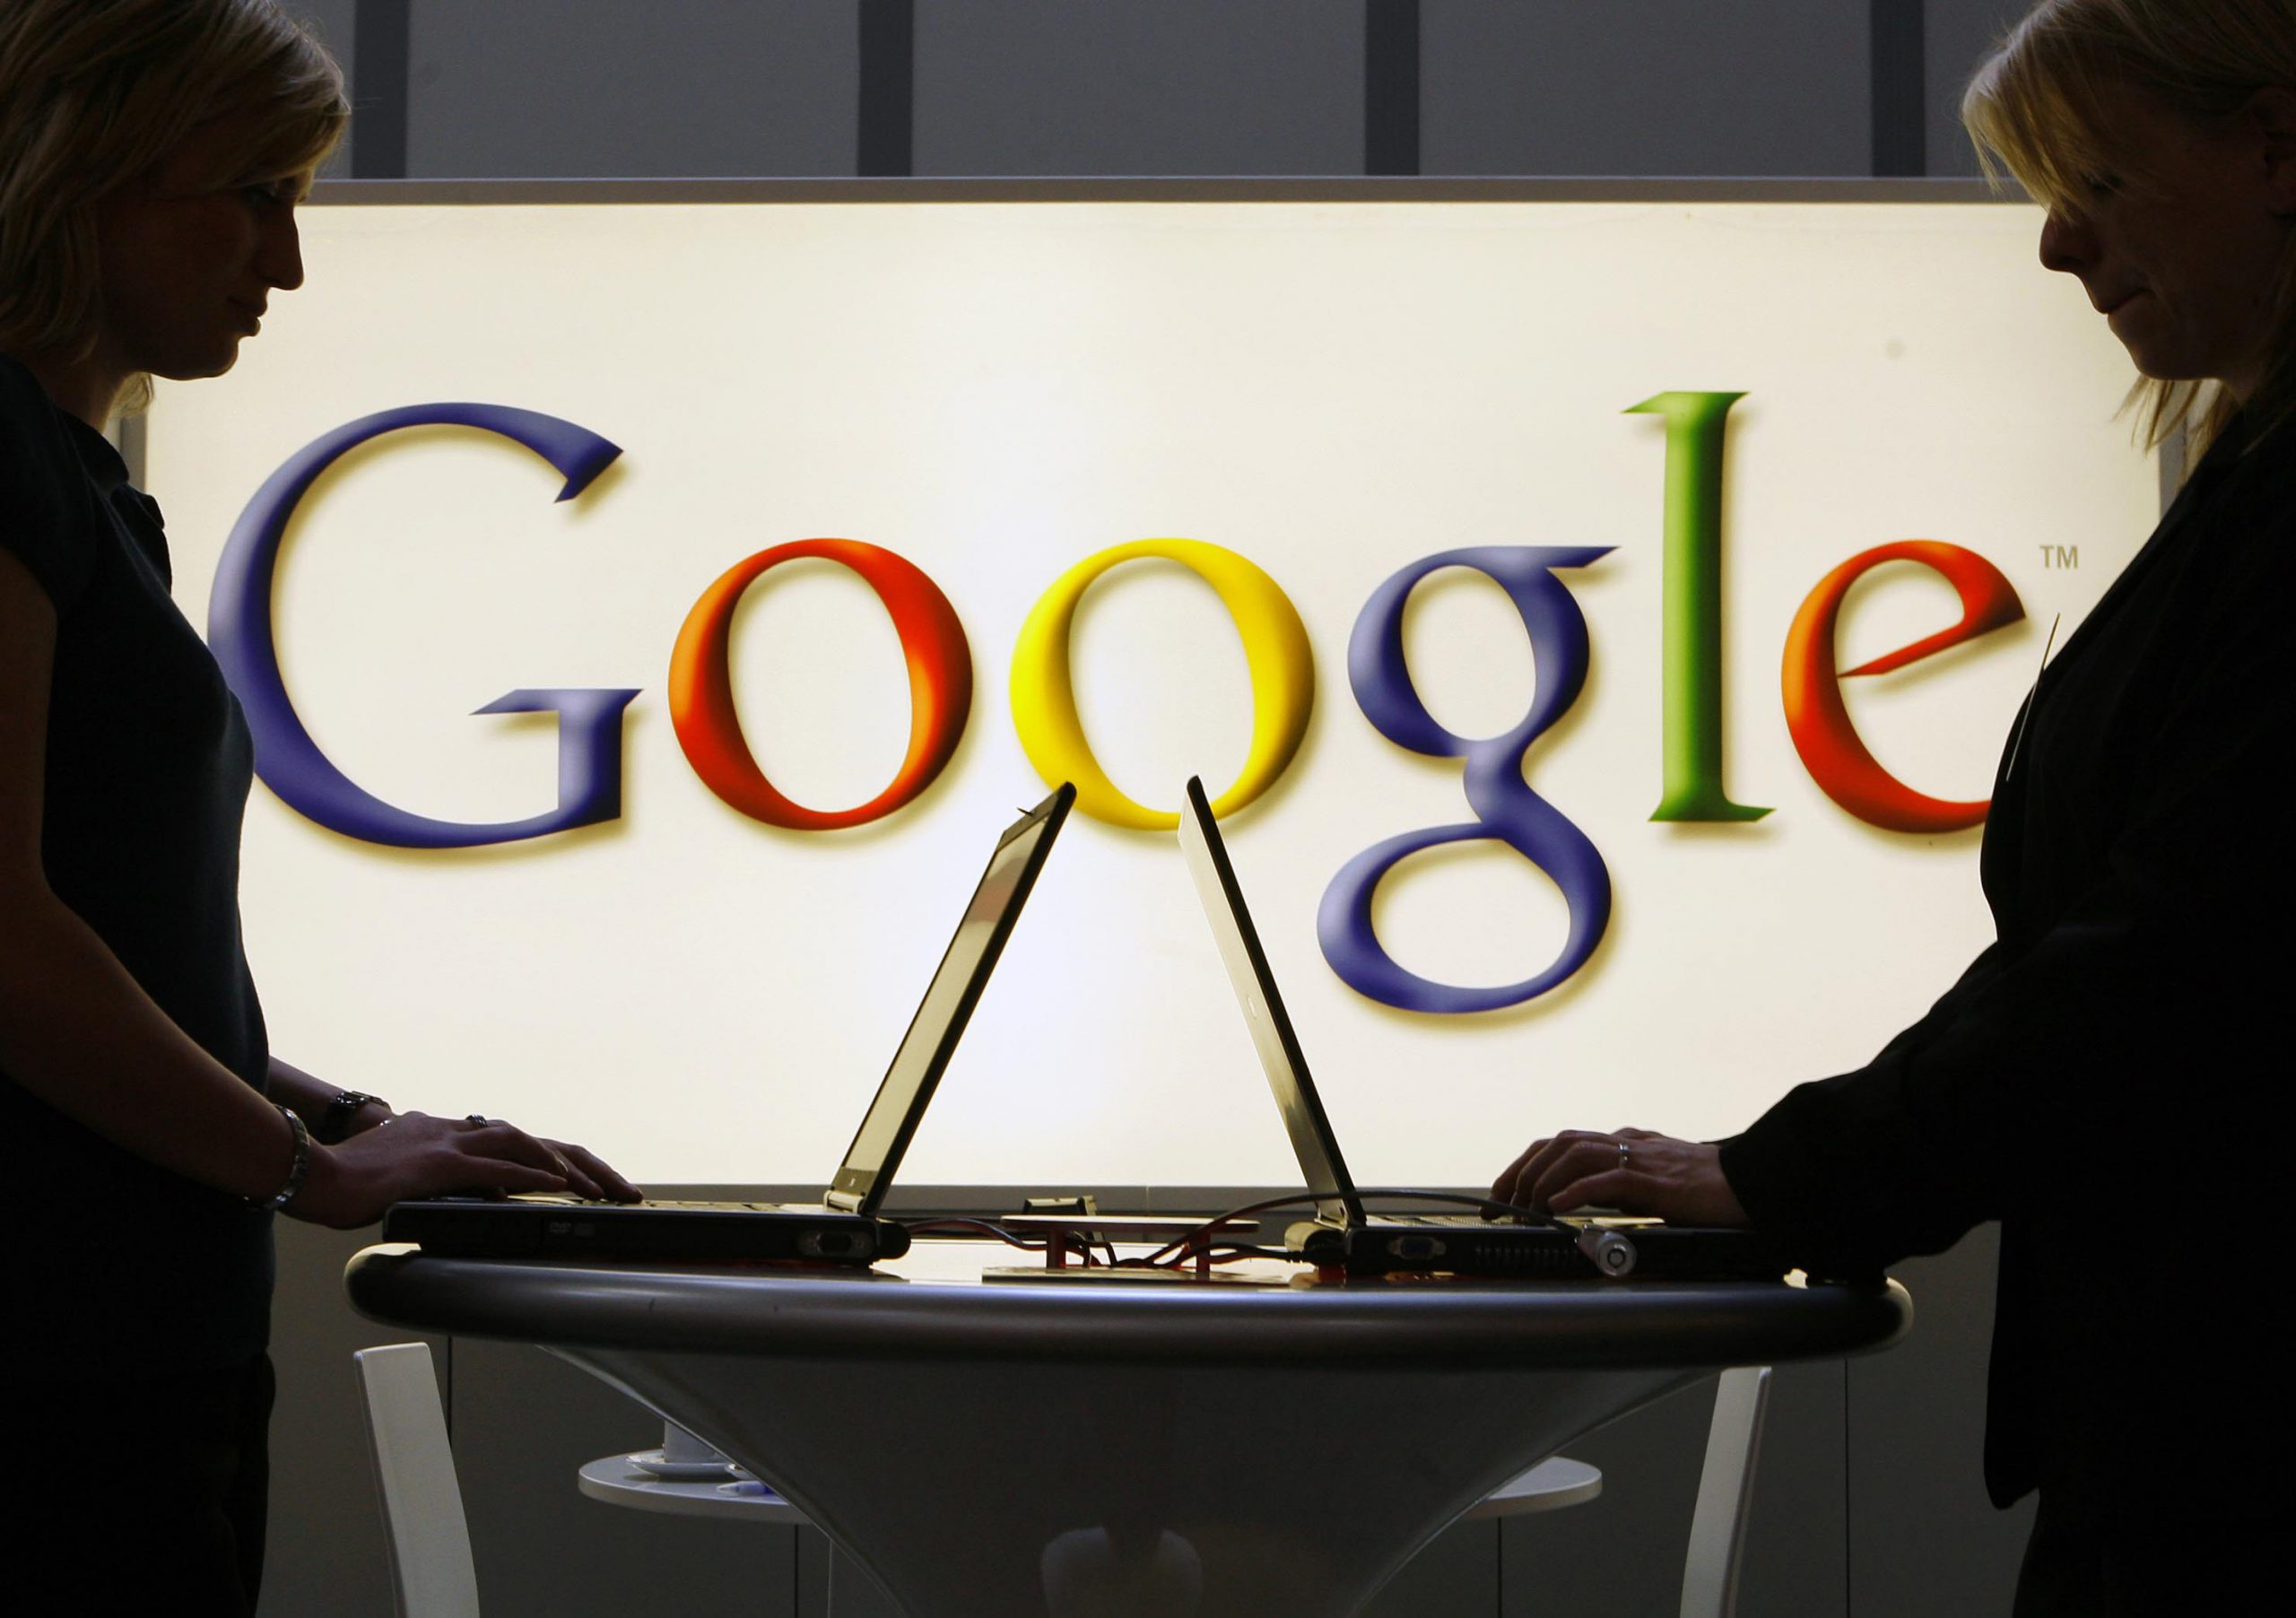 Ιταλία: Η Google καταδικάστηκε με επιβολή προστίμου 100 εκατ. ευρώ για κατάχρηση δεσπόζουσας θέσης